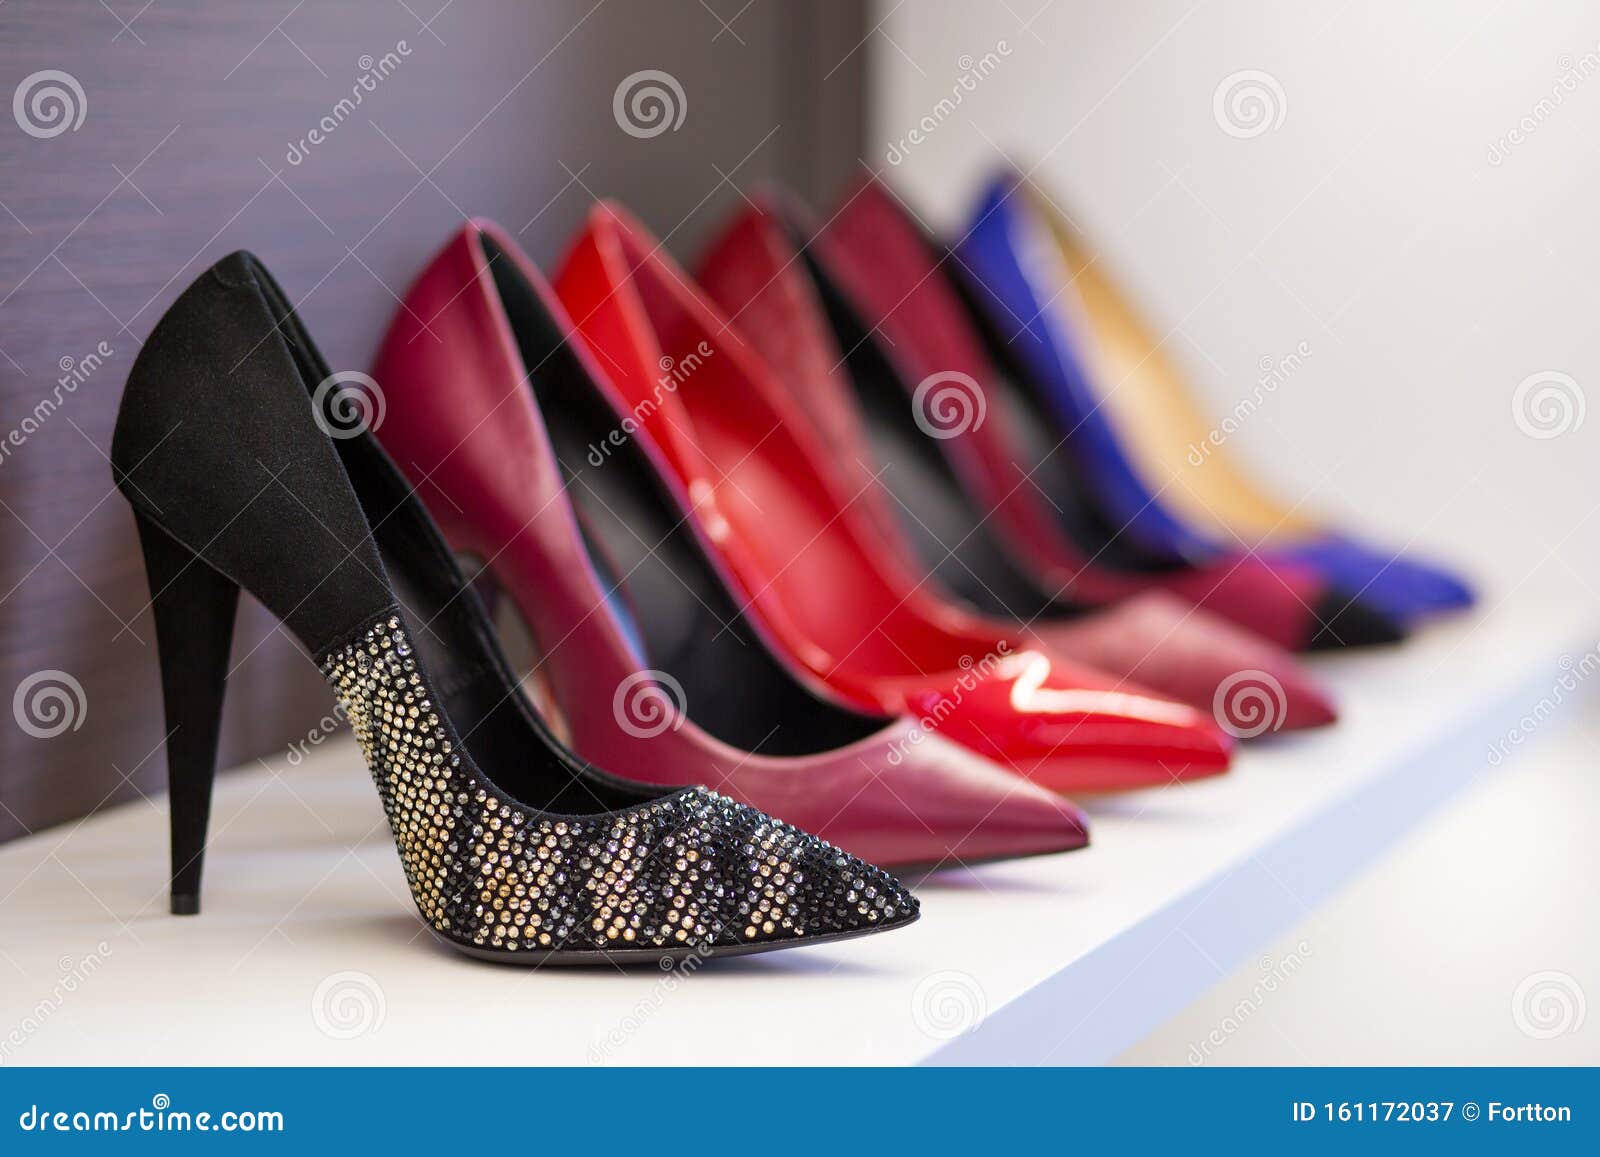 Mujeres Y Zapatos #x27 En La Tienda Zapatos De Diferentes Colores Presentados La Plataforma Comercial Imagen de archivo - Imagen de conjunto, departamento: 161172037